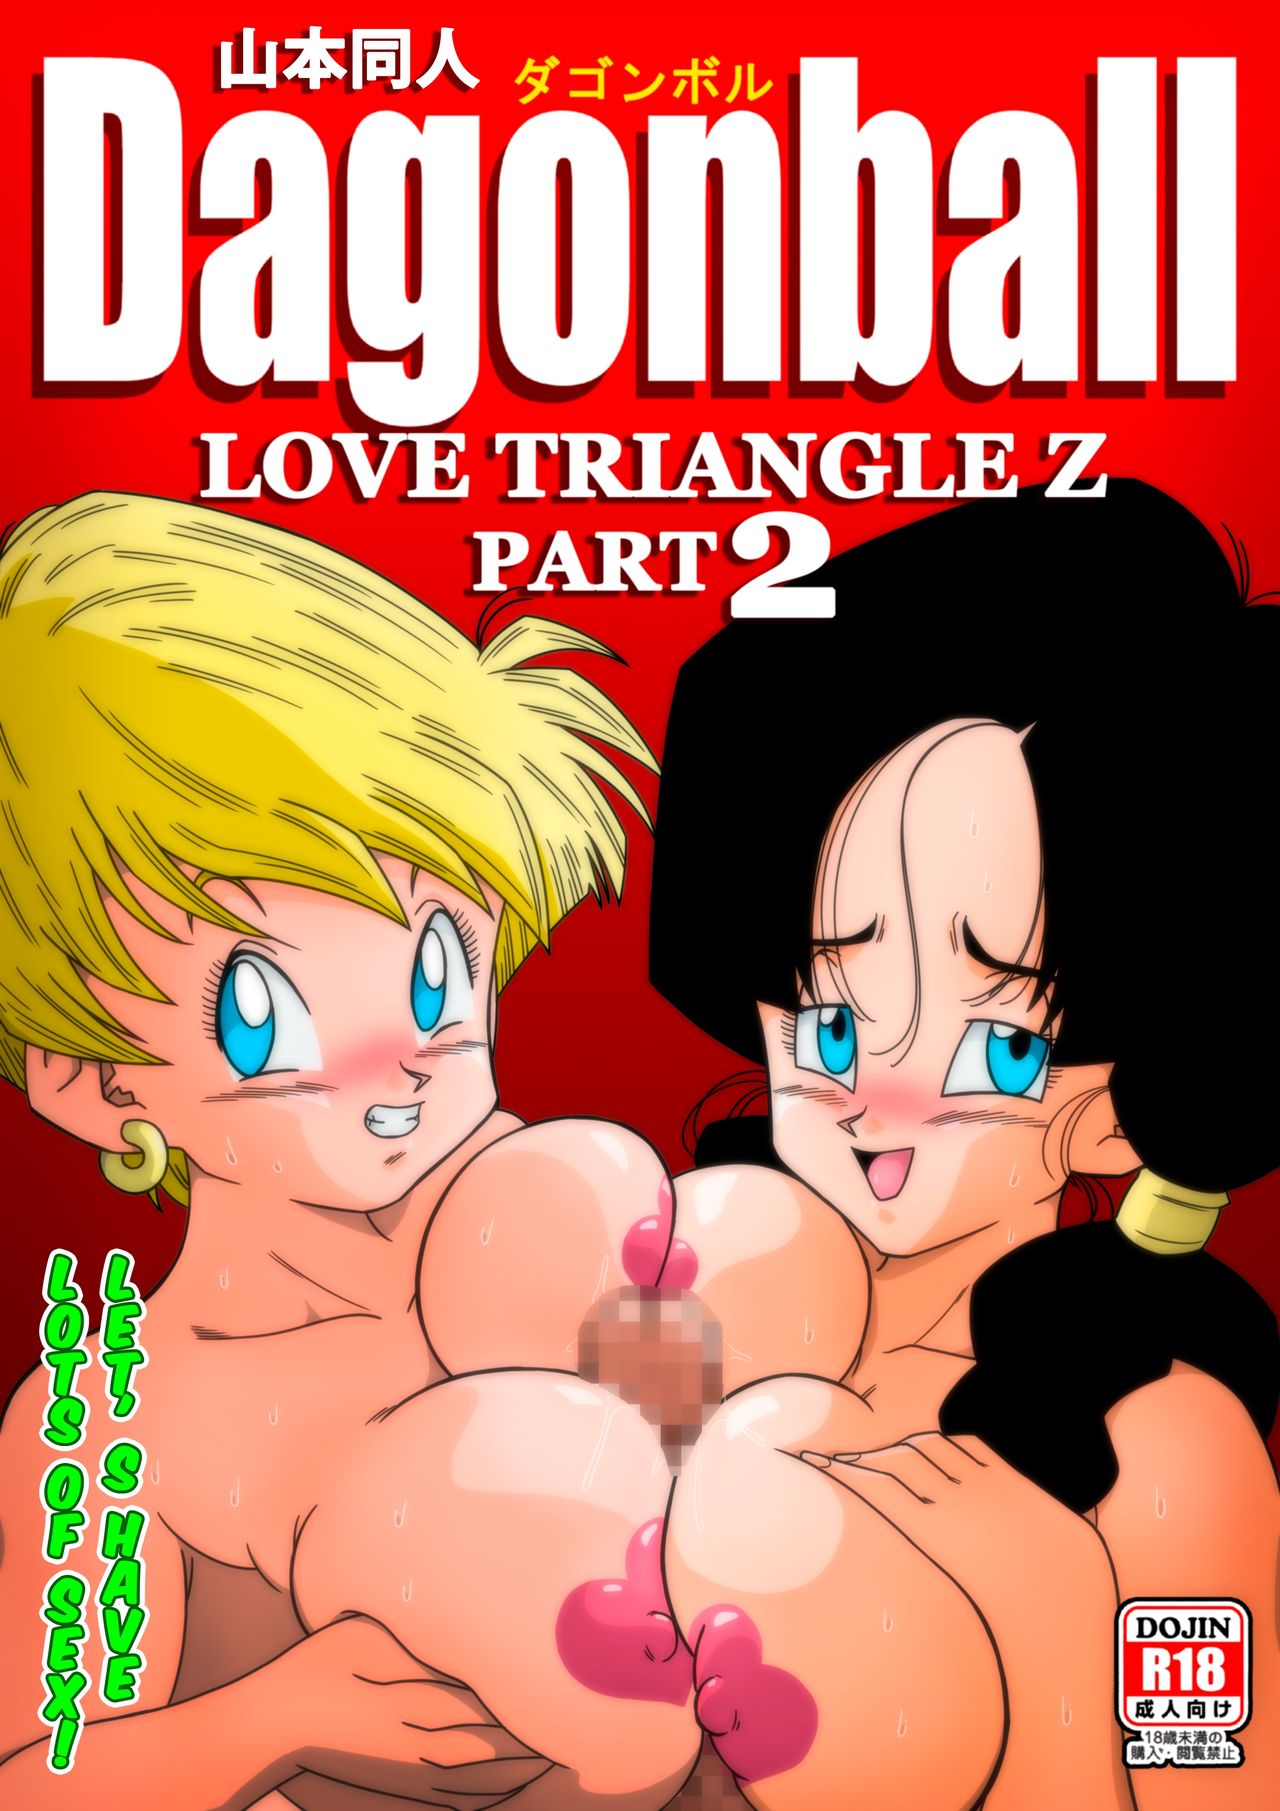 yamamoto] - Love Triangle Z part 2 (colored) (dragon ball z) porn comic.  Big breasts porn comics.